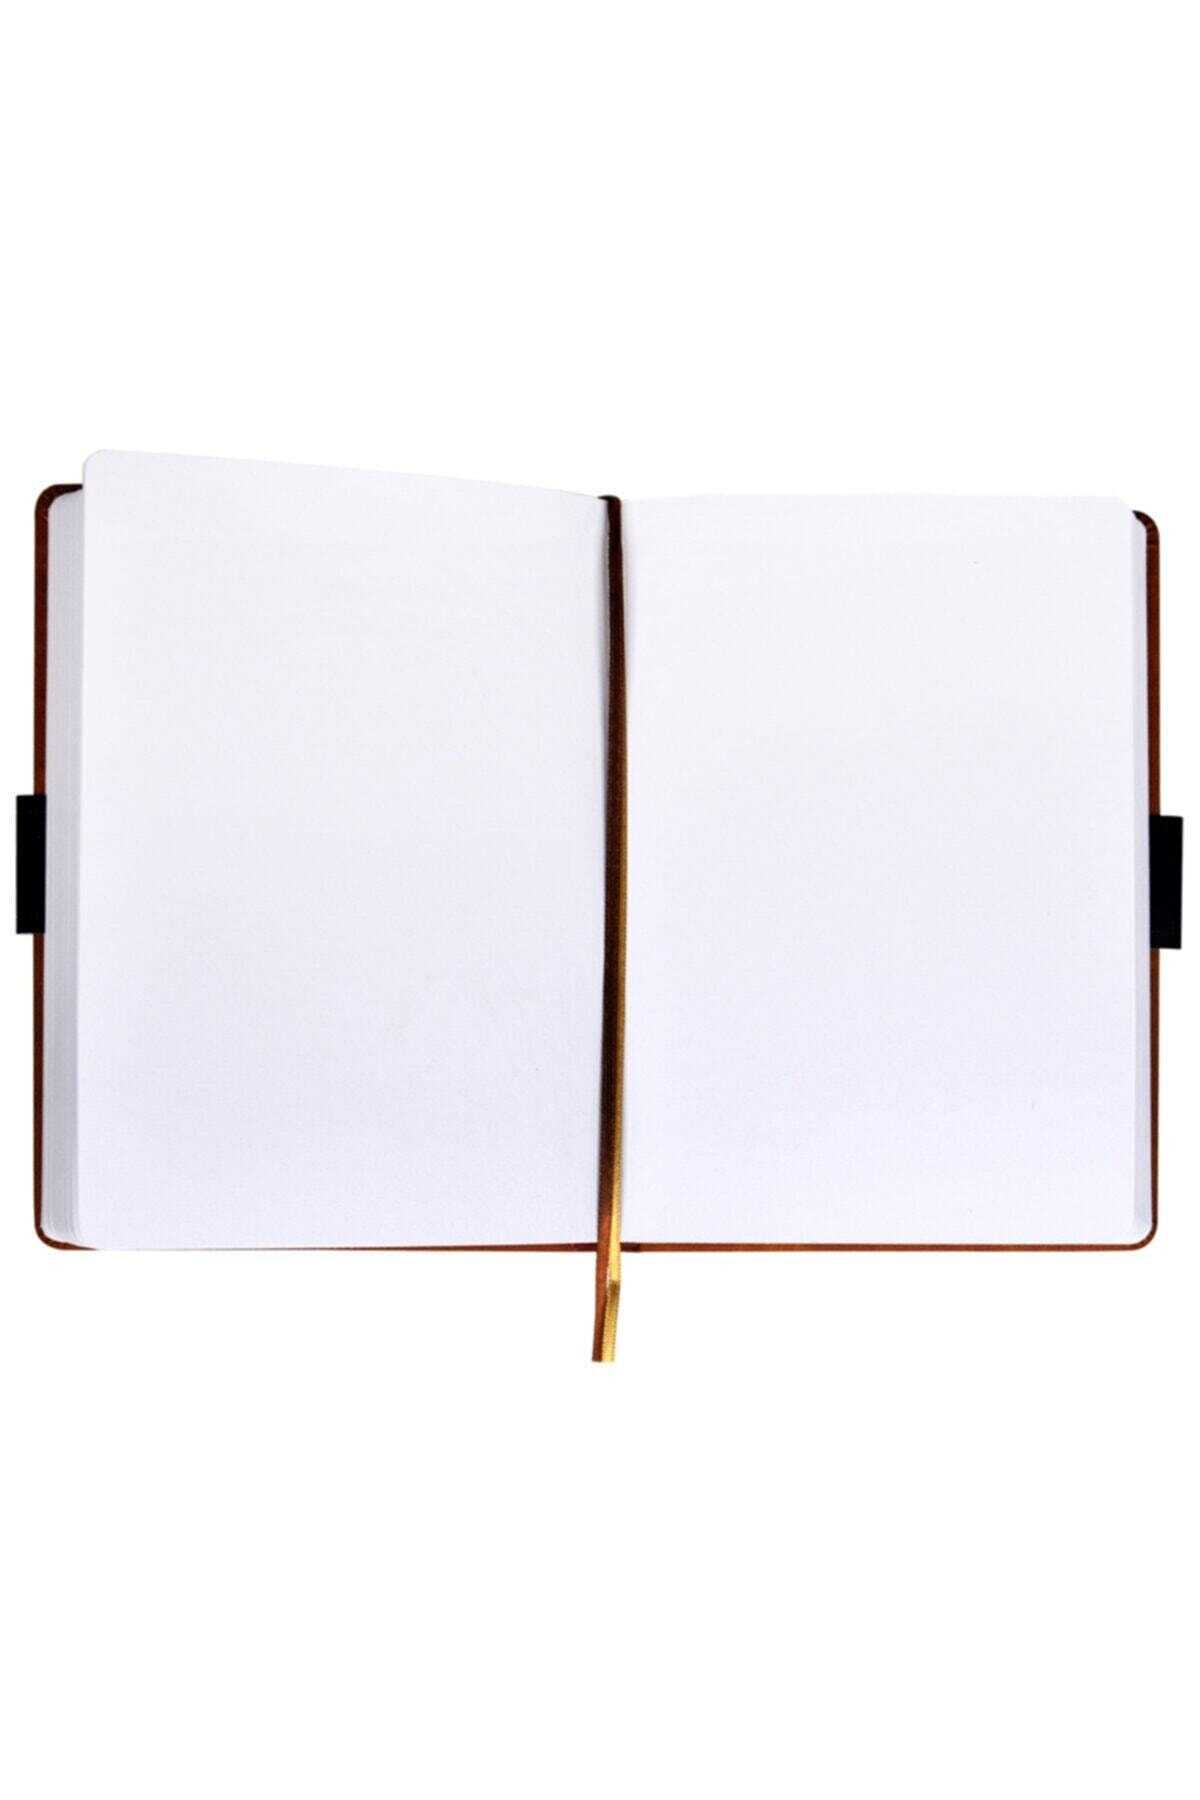 دفترچه یادداشت طرح دار قهوه ای برند Victoria's Journals